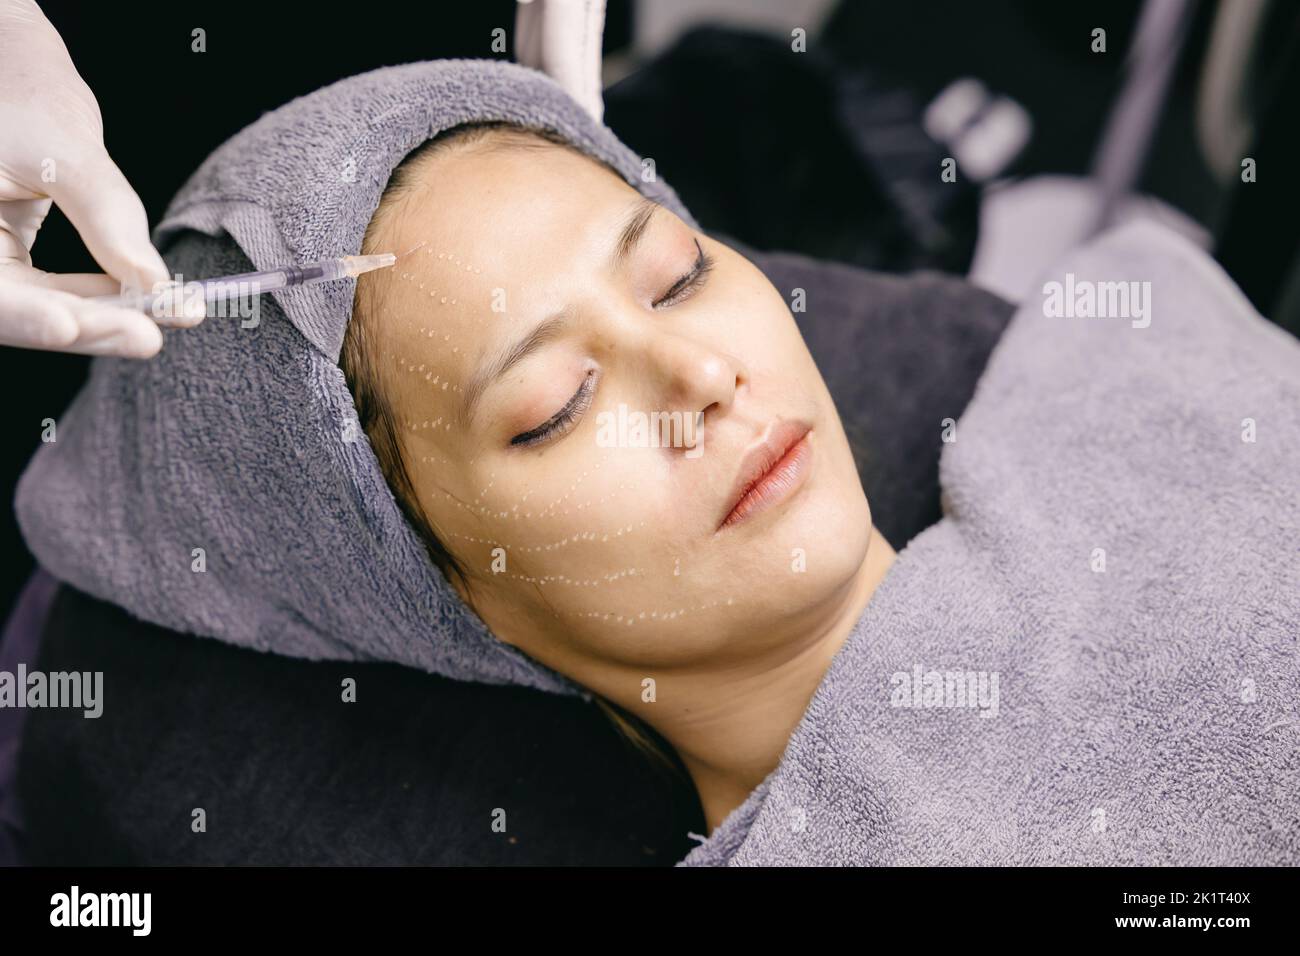 Lady teen rides faciales enlever le processus par injection de toxine Botulinum visage soulever en clinique avec la main du médecin Banque D'Images